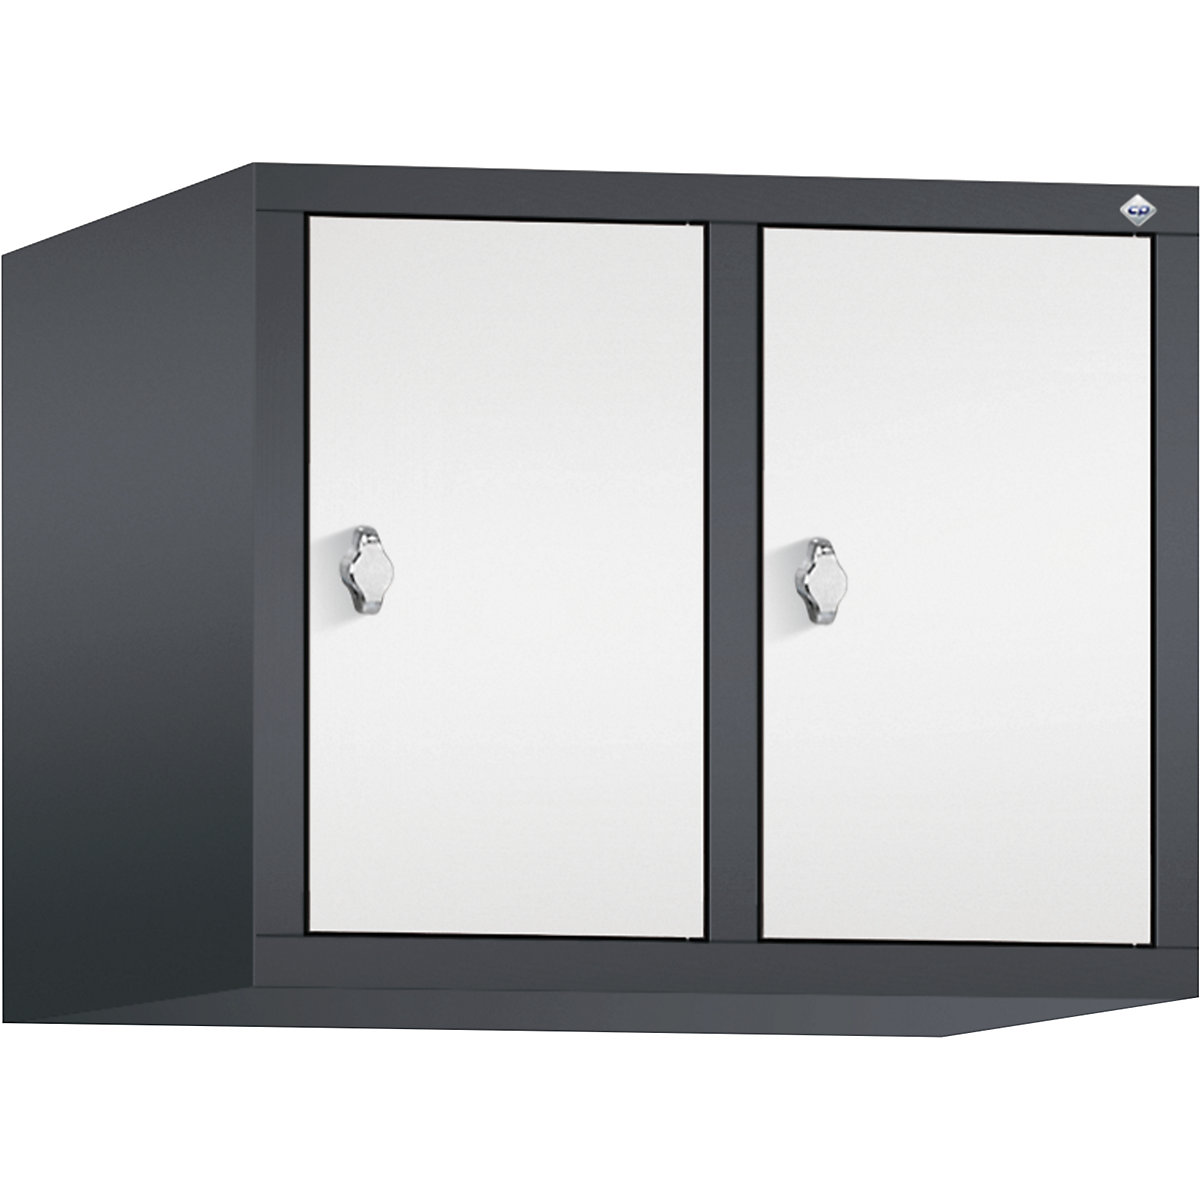 C+P – Altillo CLASSIC, 2 compartimentos, anchura de compartimento 300 mm, gris negruzco / blanco tráfico